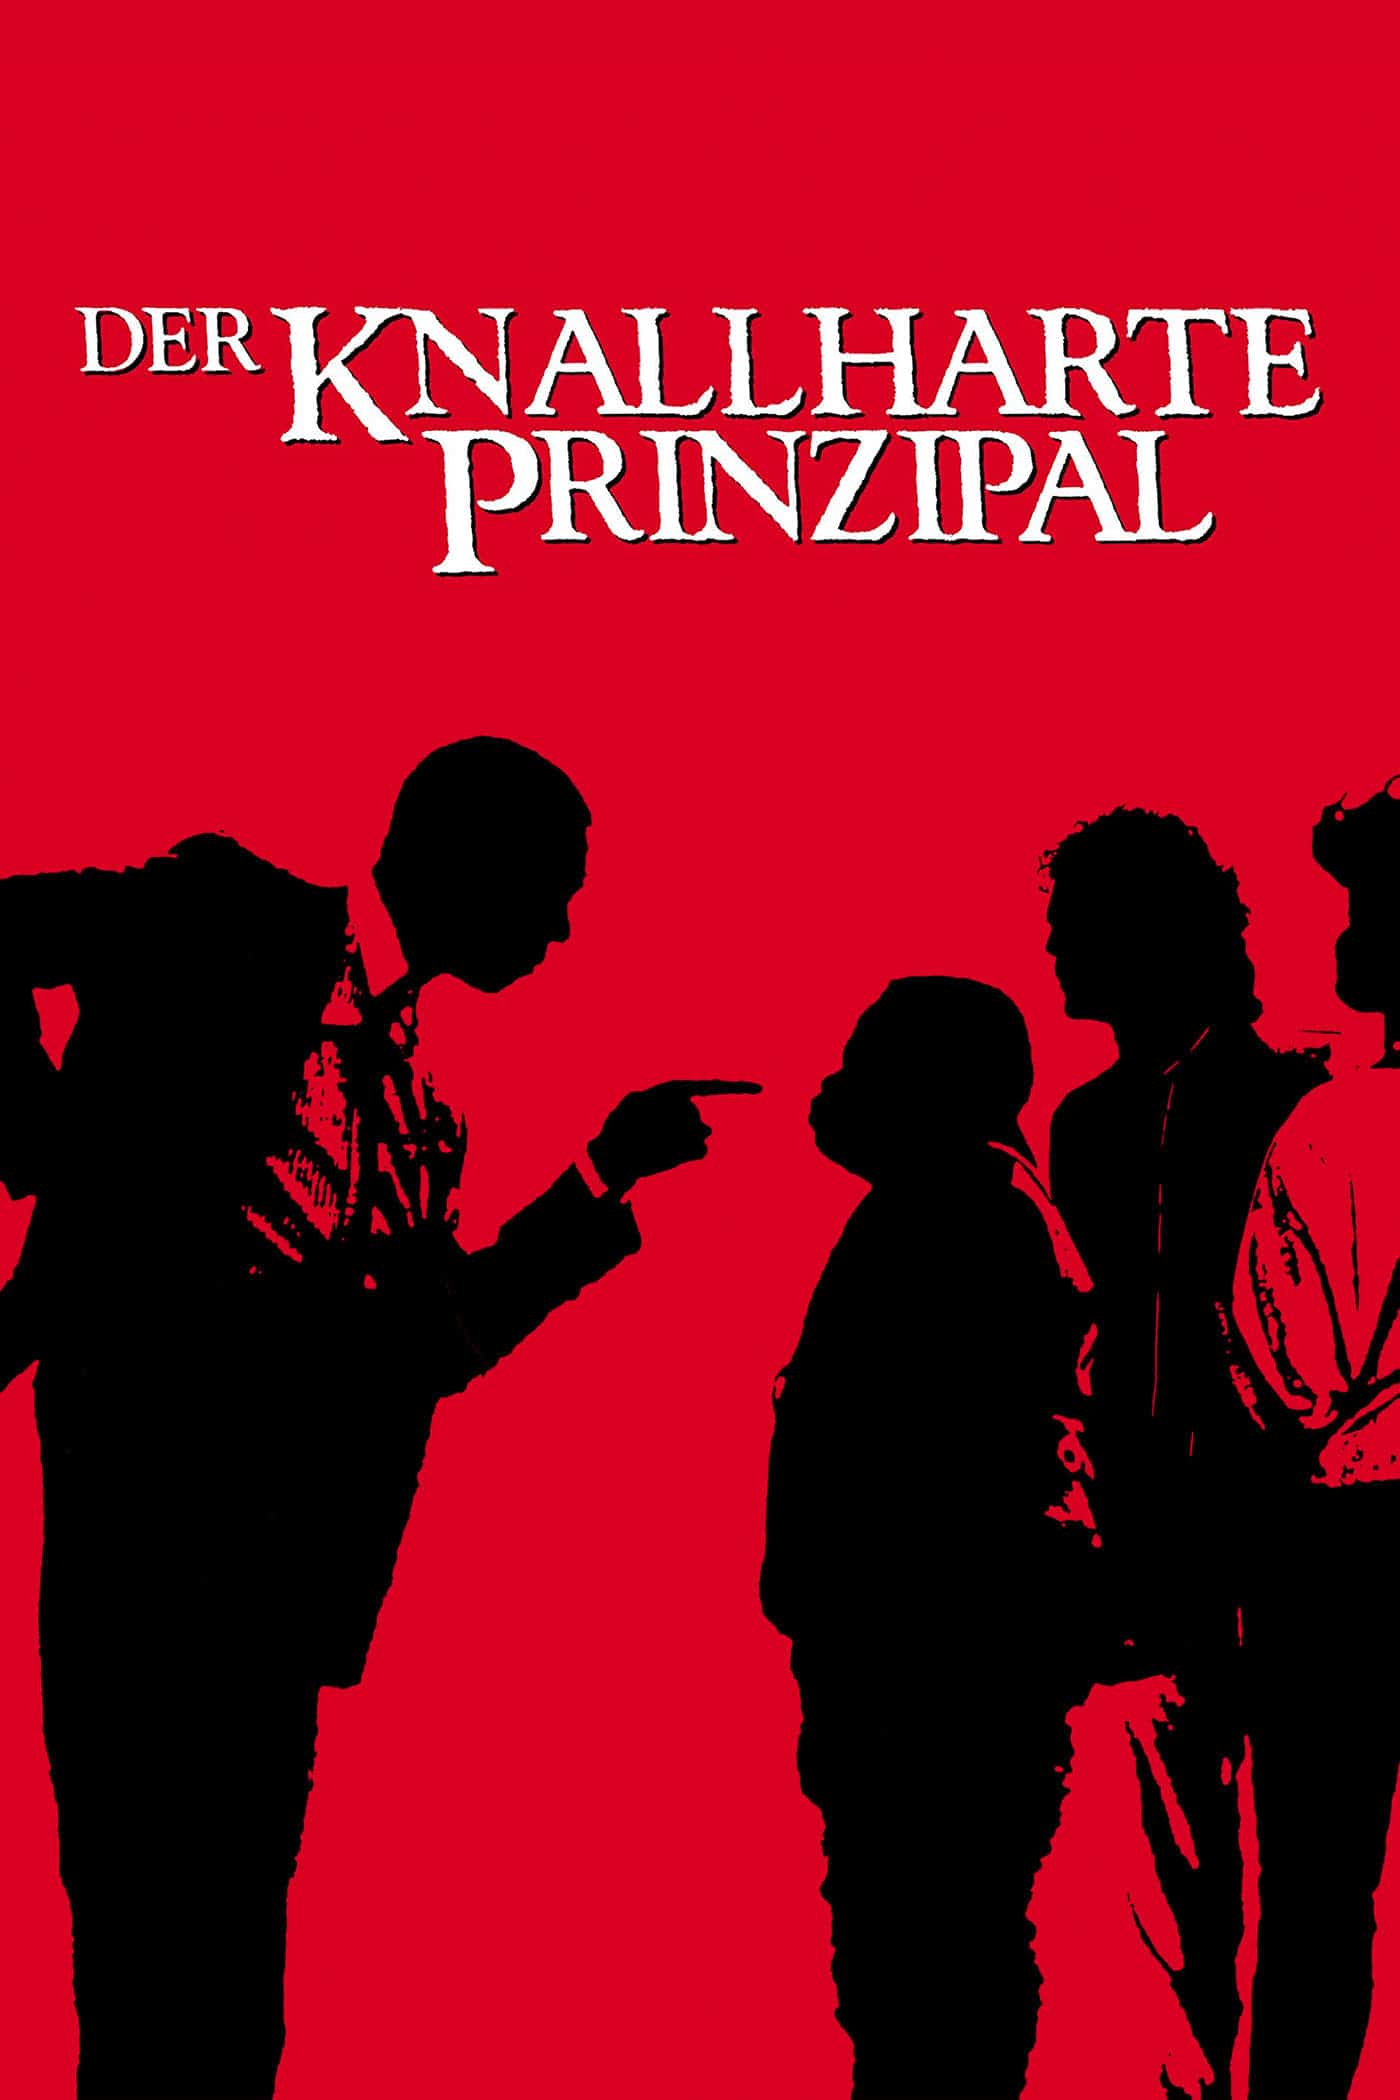 Plakat von "Der knallharte Prinzipal"